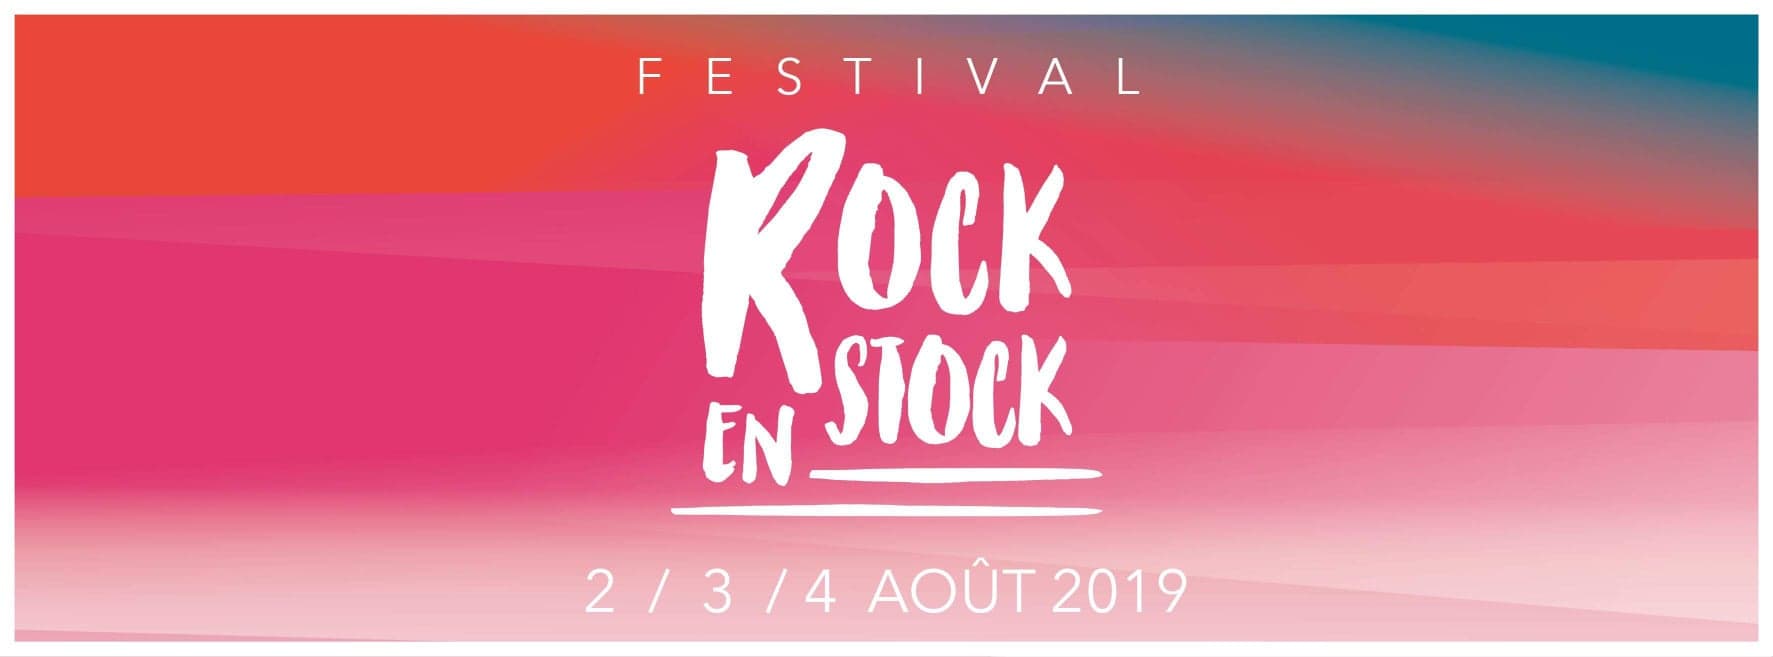 rock en stock 2019